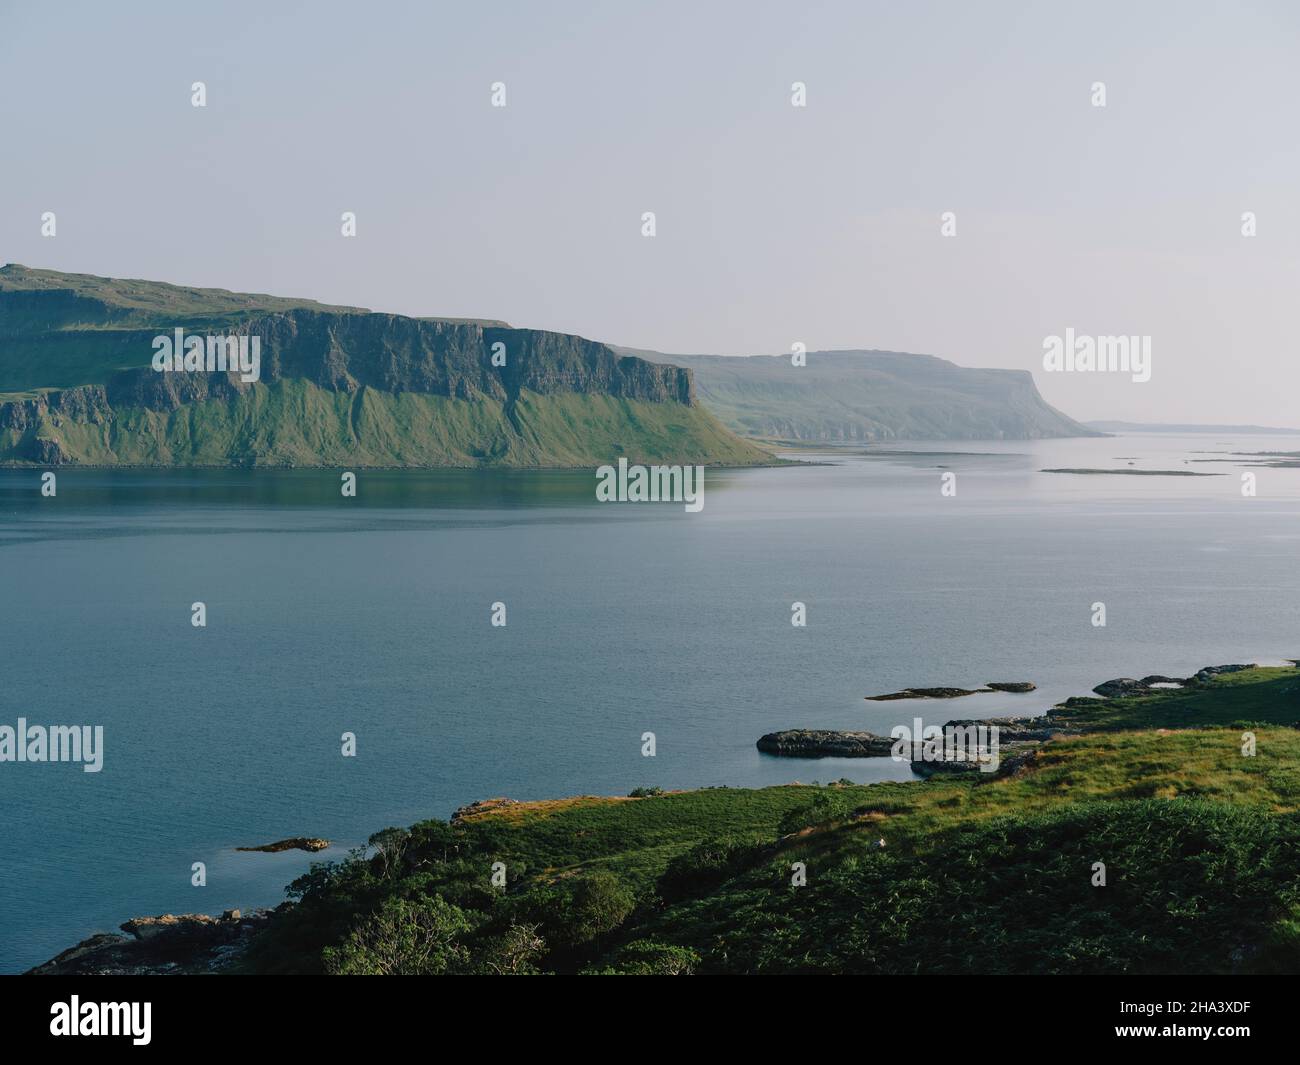 Mirando hacia el sudeste a través del verde paisaje veraniego del lago Na Keal hasta los acantilados de Creag a Ghaill, la isla de Mull, las Hébridas Interiores, Argyll y Bute Escocia Reino Unido Foto de stock